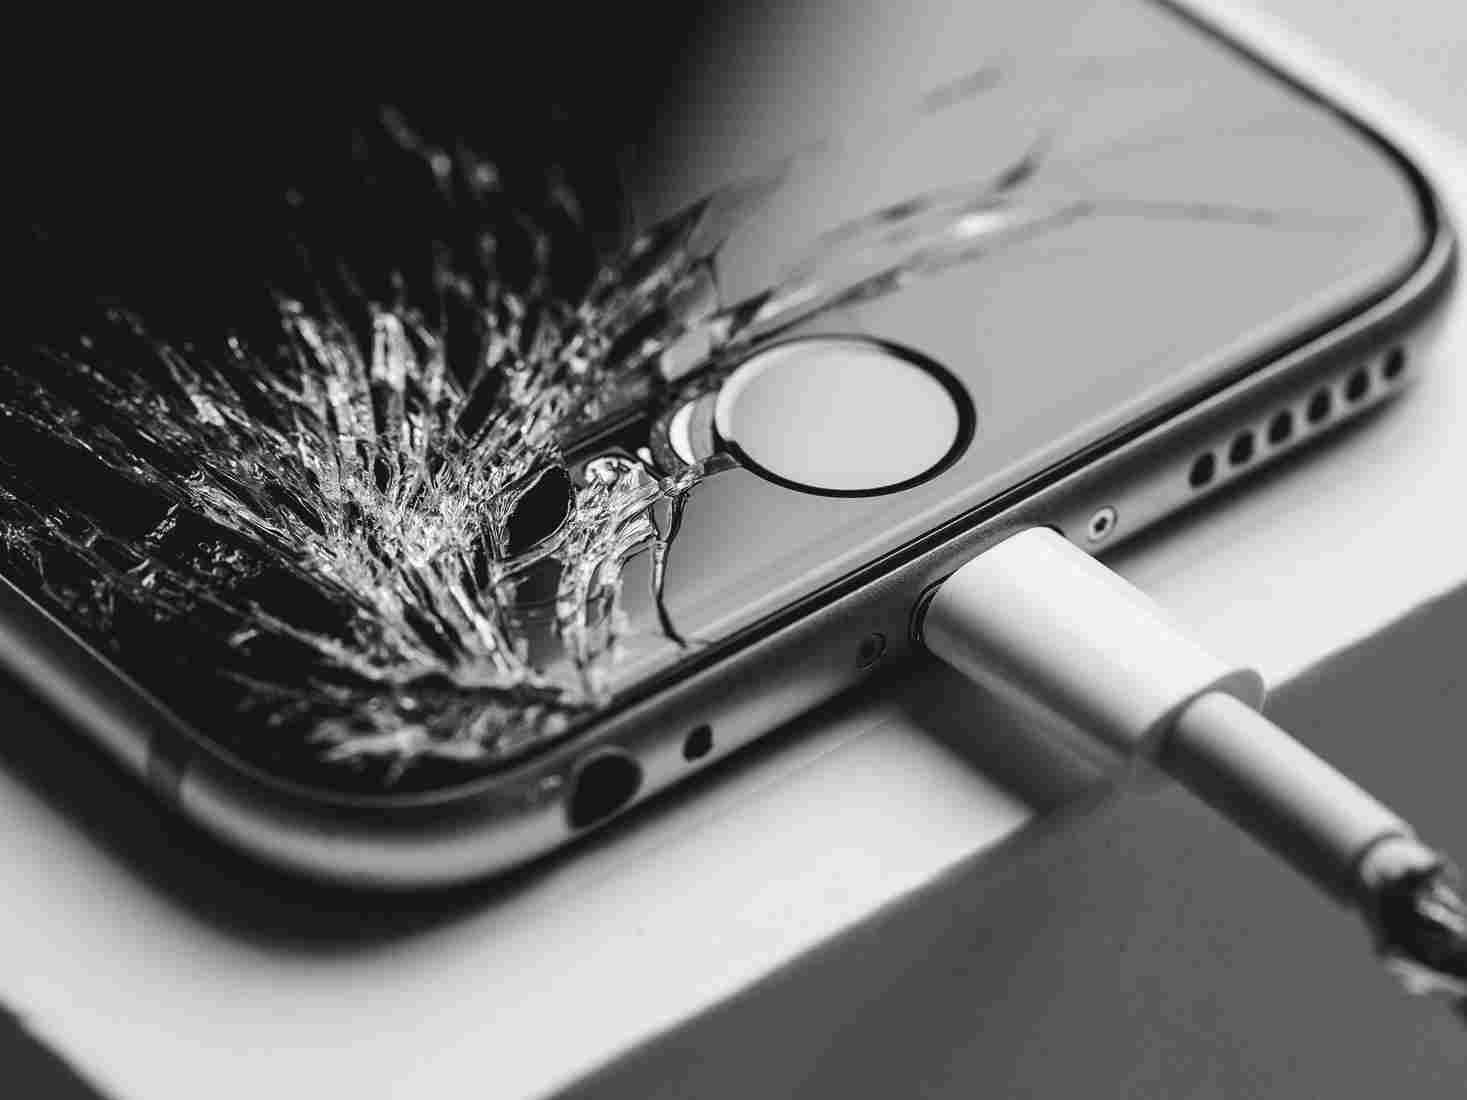 Reparaciones iPhone Barcelona: Soluciones confiables para tus dispositivos